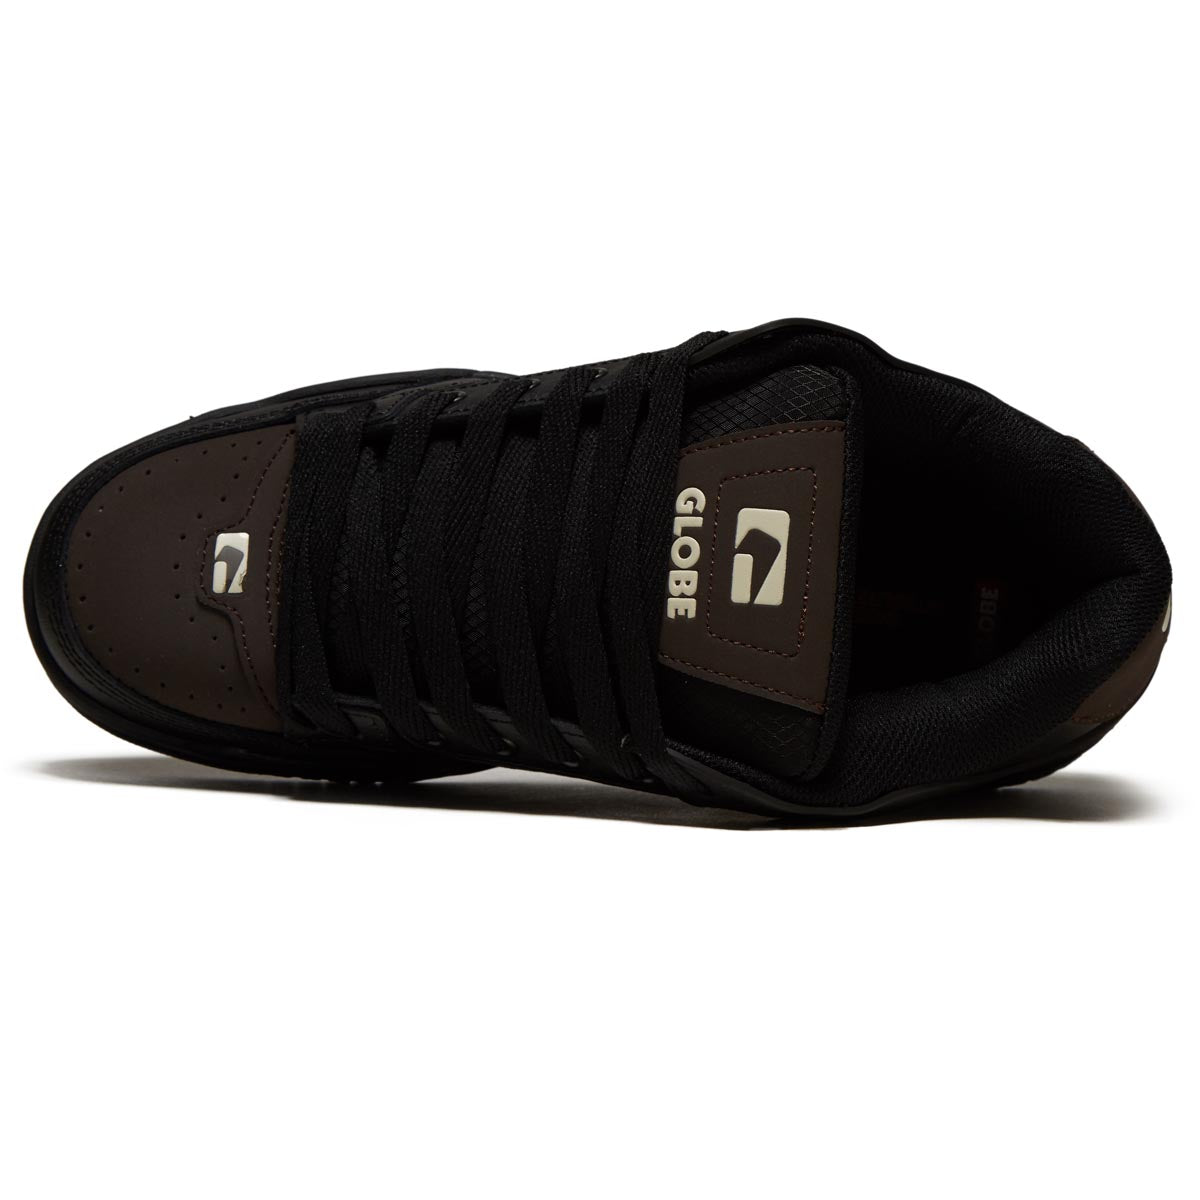 Globe Tilt Shoes - Black/Tan/Cobalt image 3